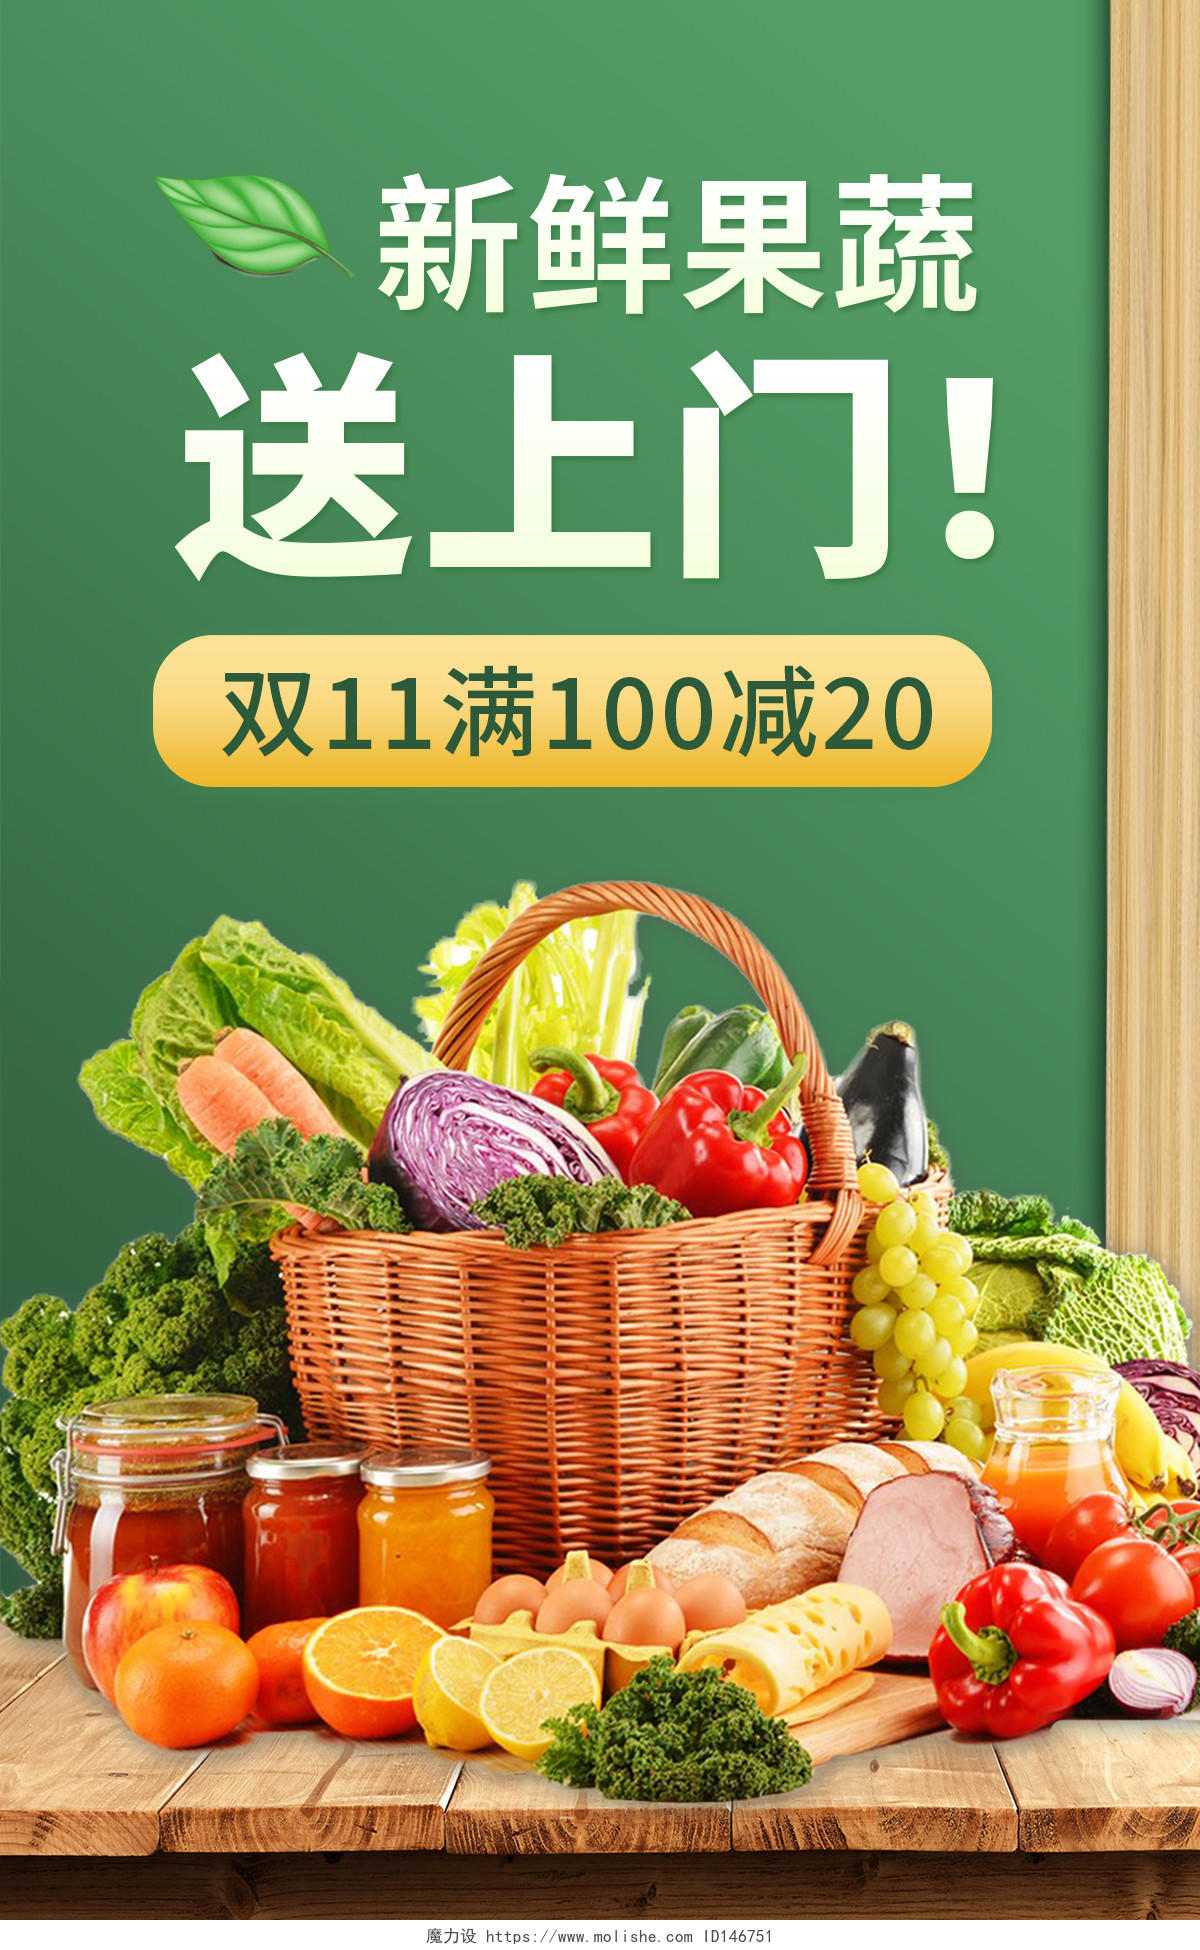 绿色背景简约风格双十一食品海报果蔬生鲜海报banner双十一食品banner